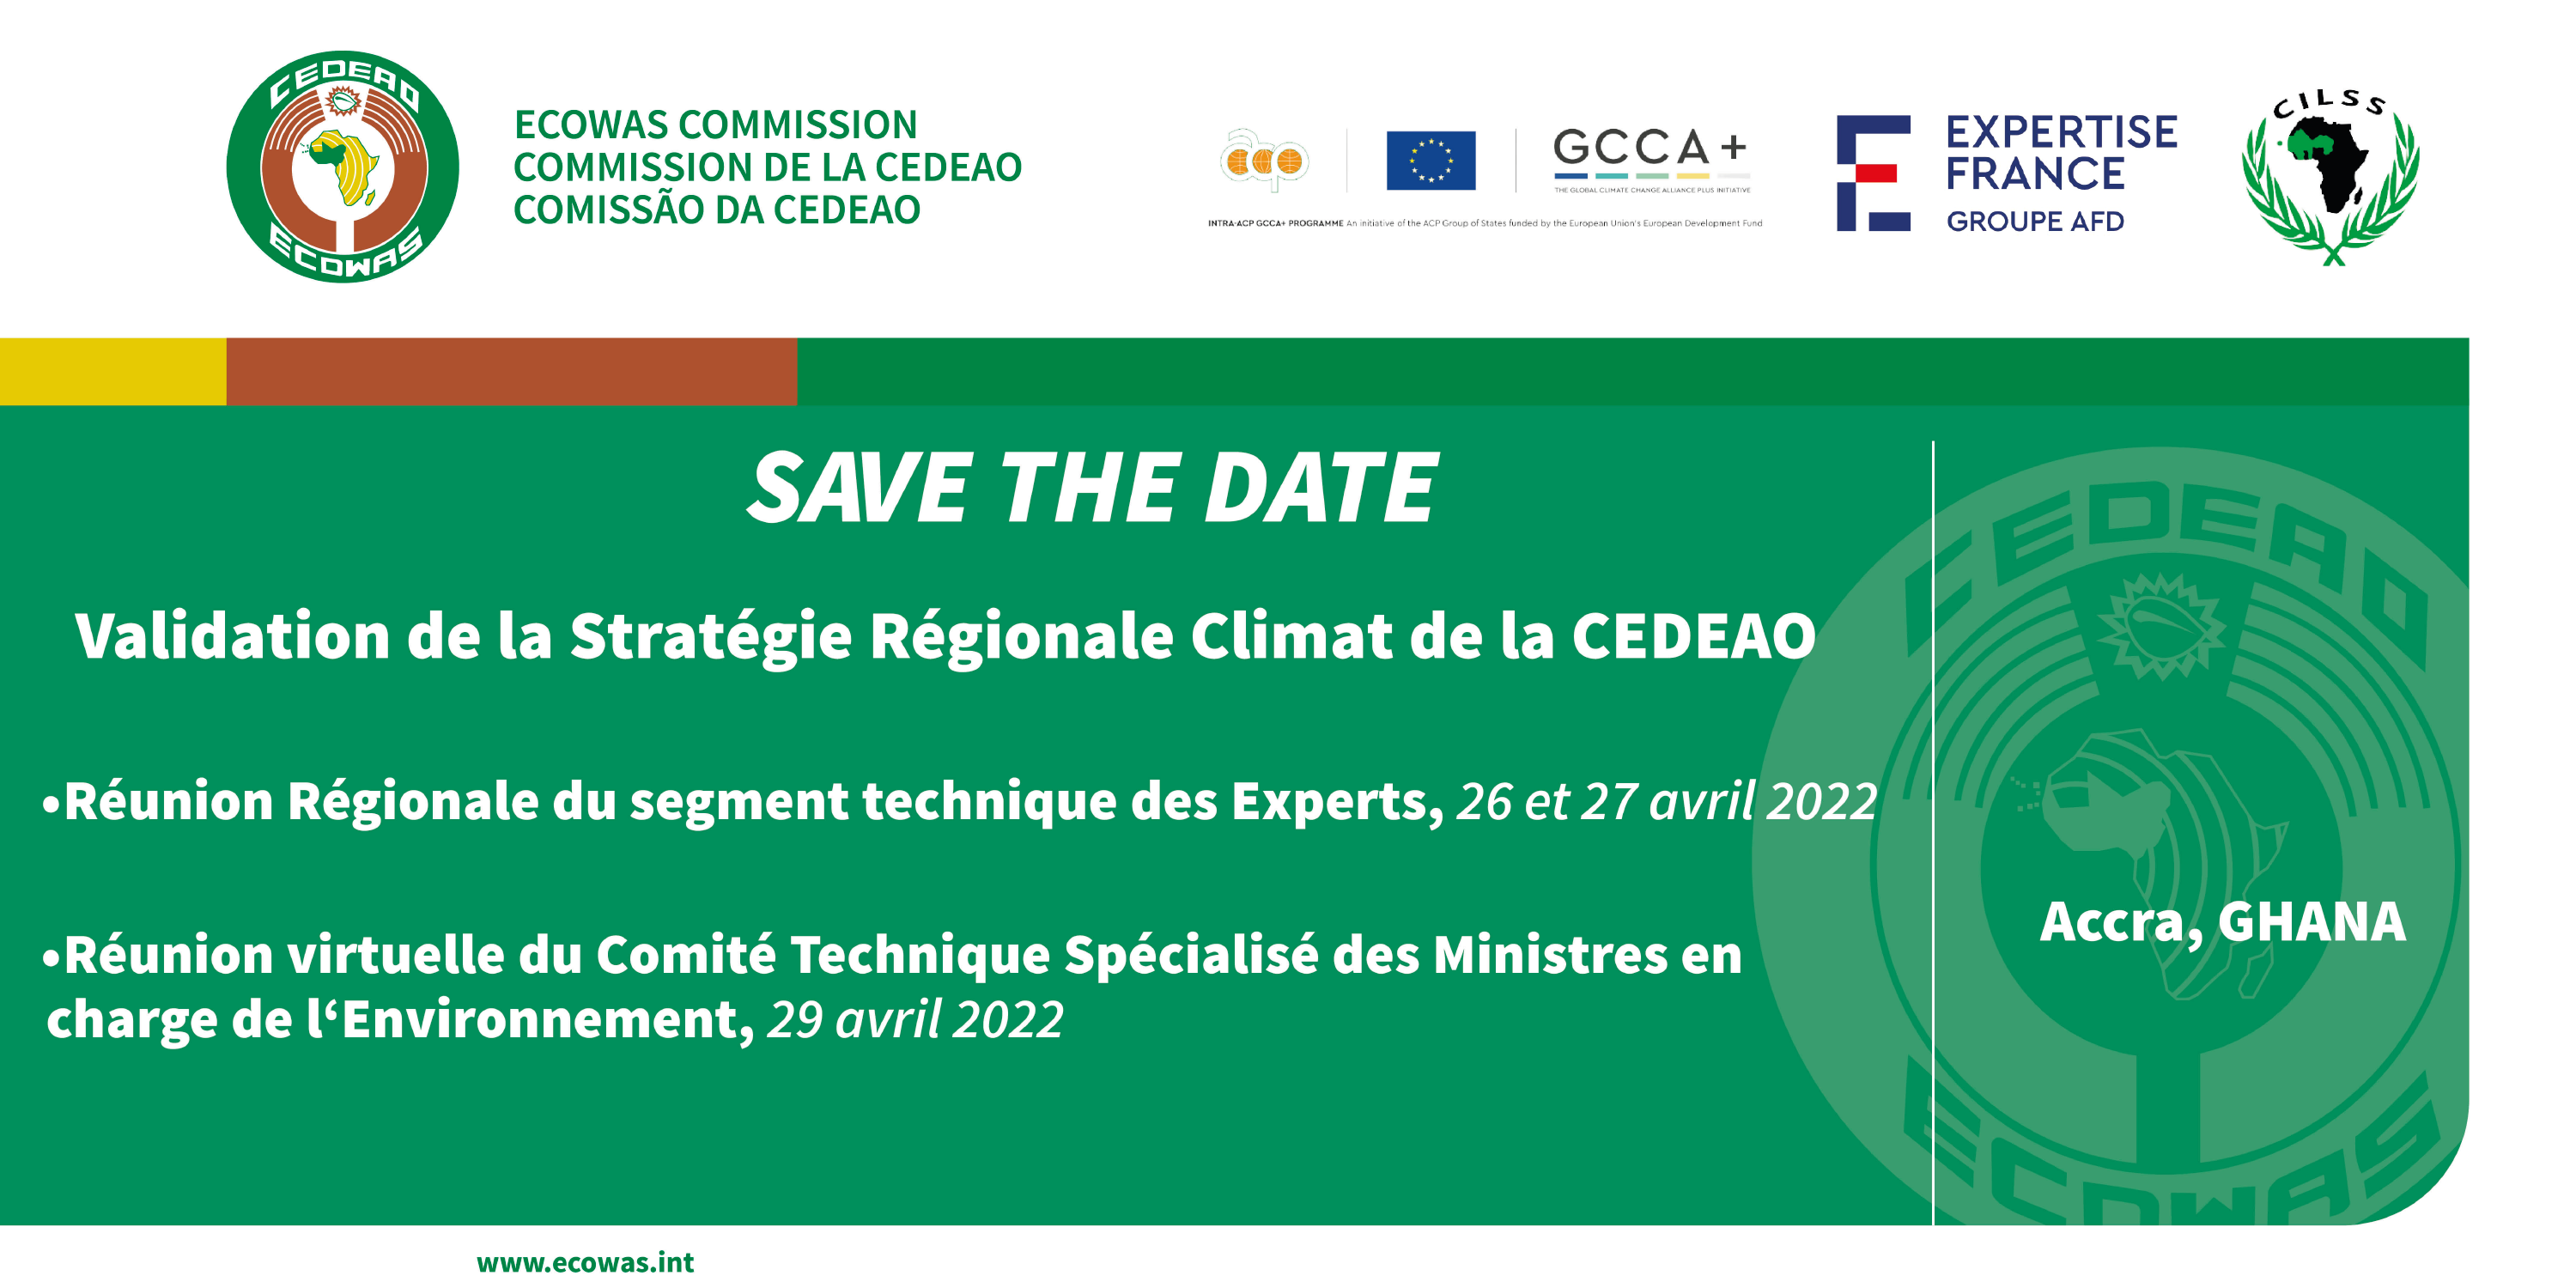 Aterlier de validation de la Stratégie Régionale Climat de la CEDEAO